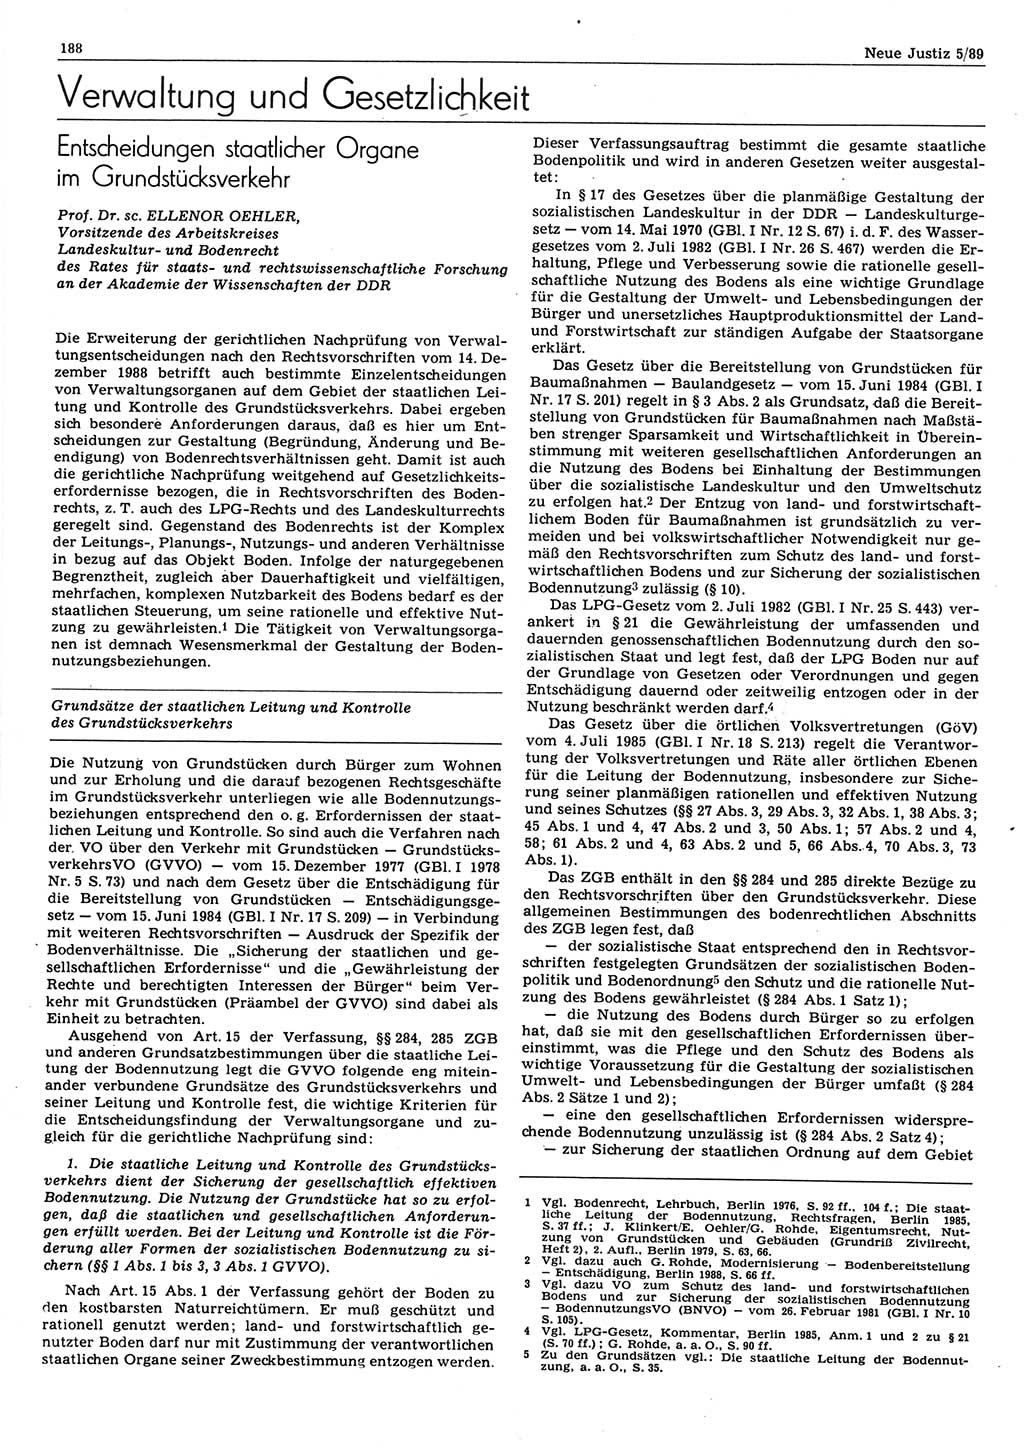 Neue Justiz (NJ), Zeitschrift für sozialistisches Recht und Gesetzlichkeit [Deutsche Demokratische Republik (DDR)], 43. Jahrgang 1989, Seite 188 (NJ DDR 1989, S. 188)